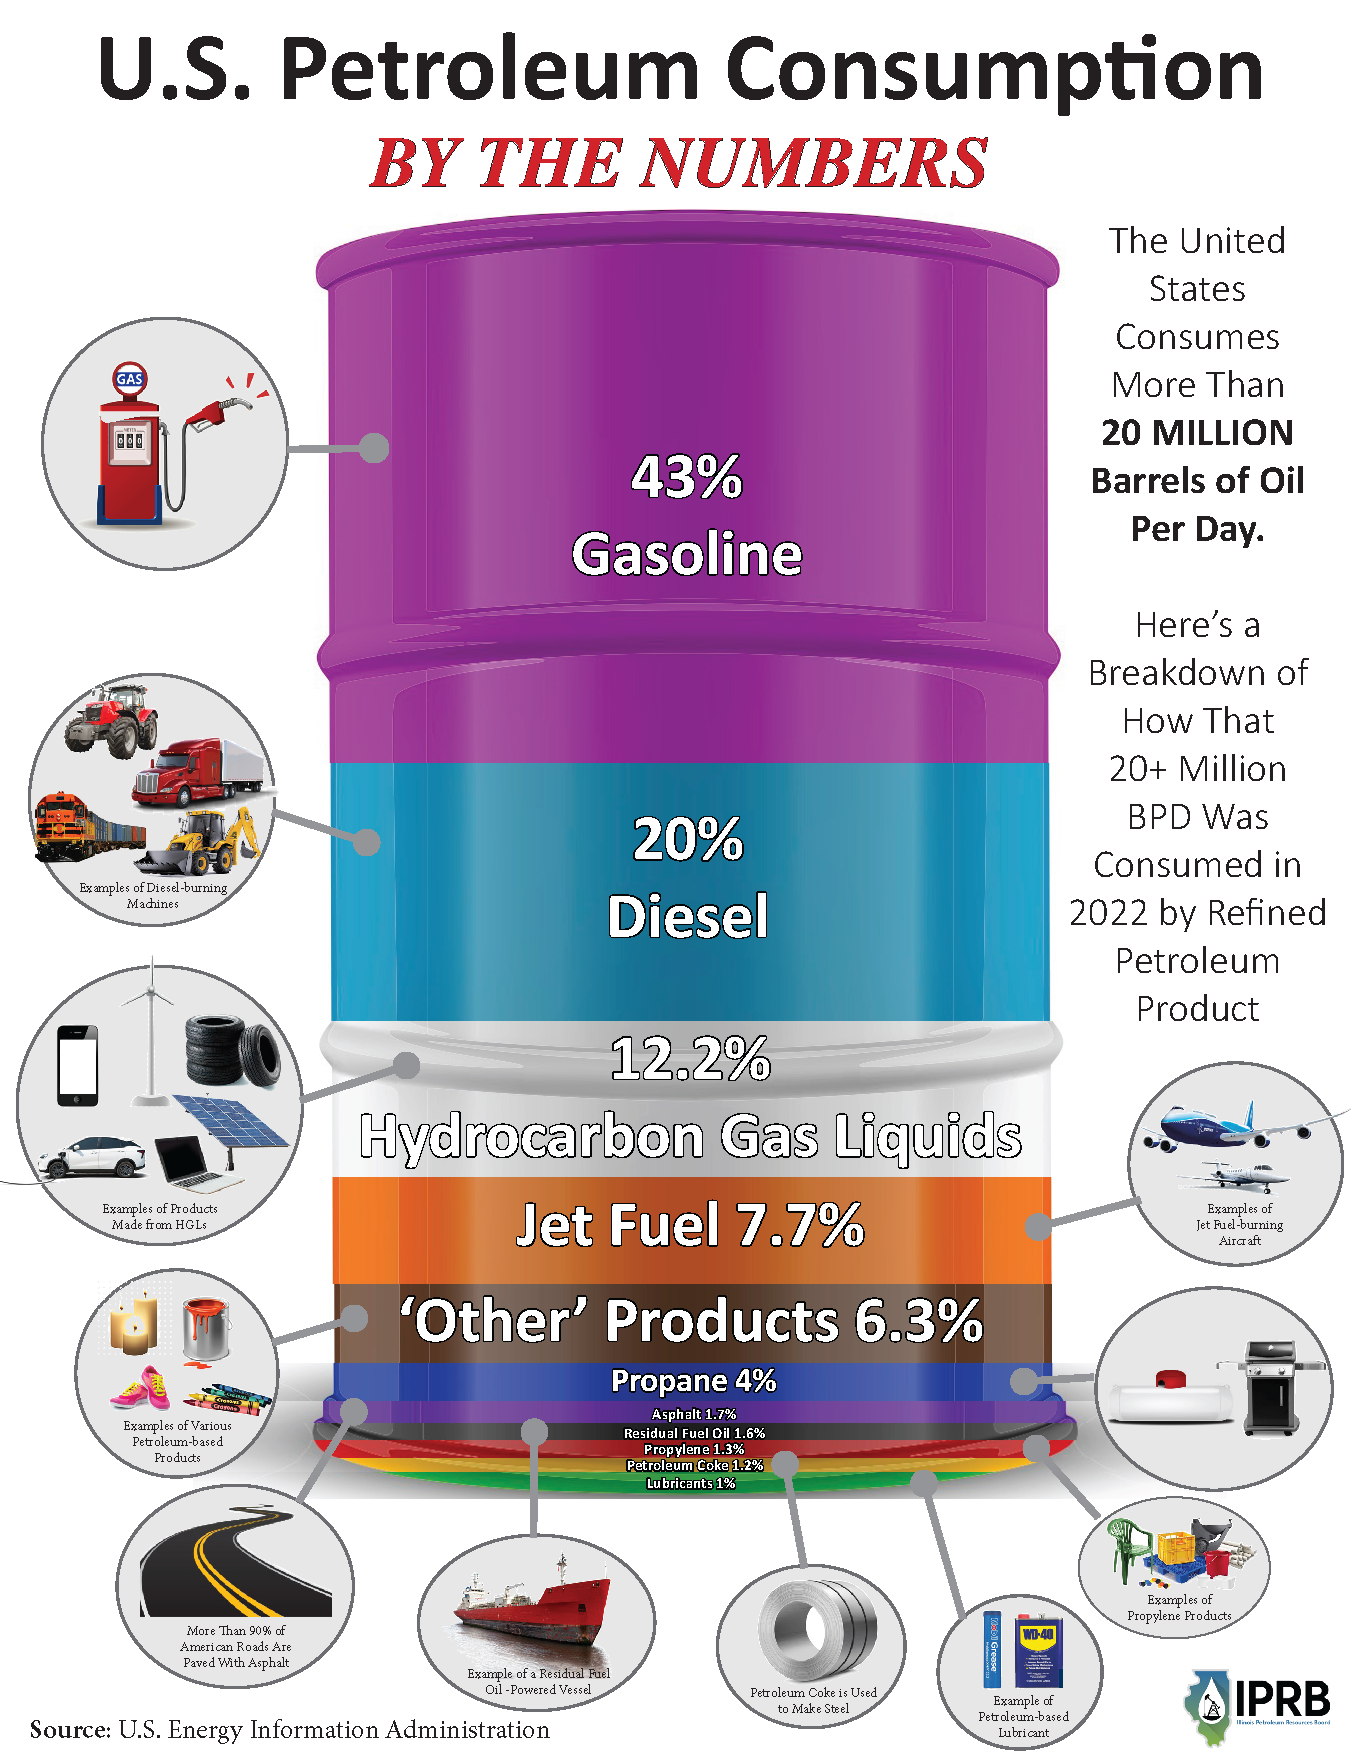 Petroleum production, Definition & Facts